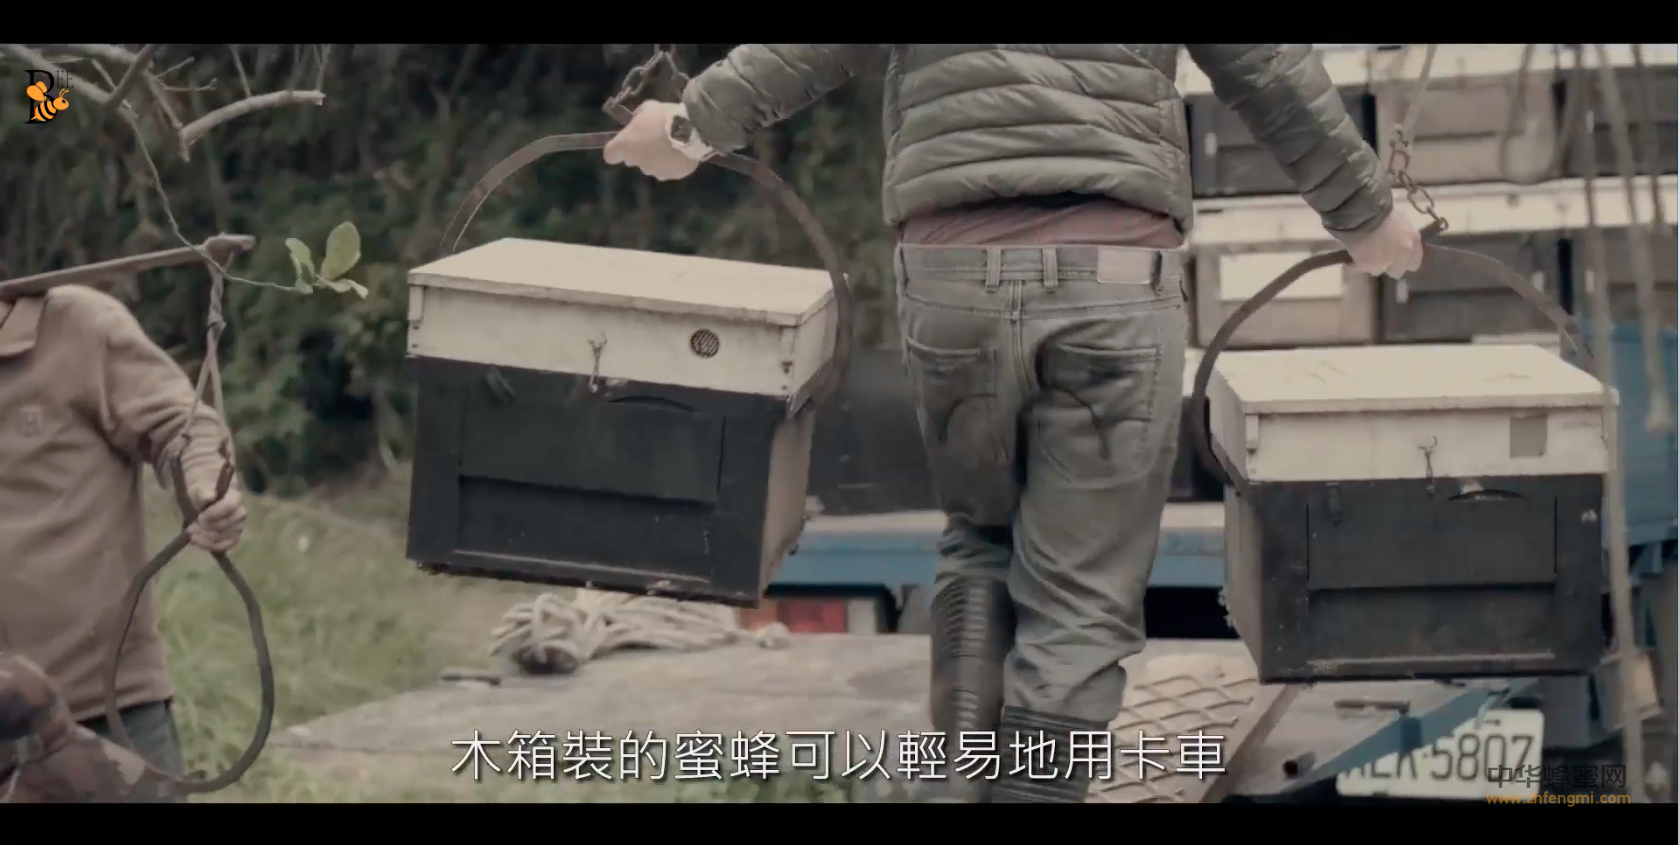 蜜蜂 养蜂技术视频 国外养蜂视频 台湾养蜂业